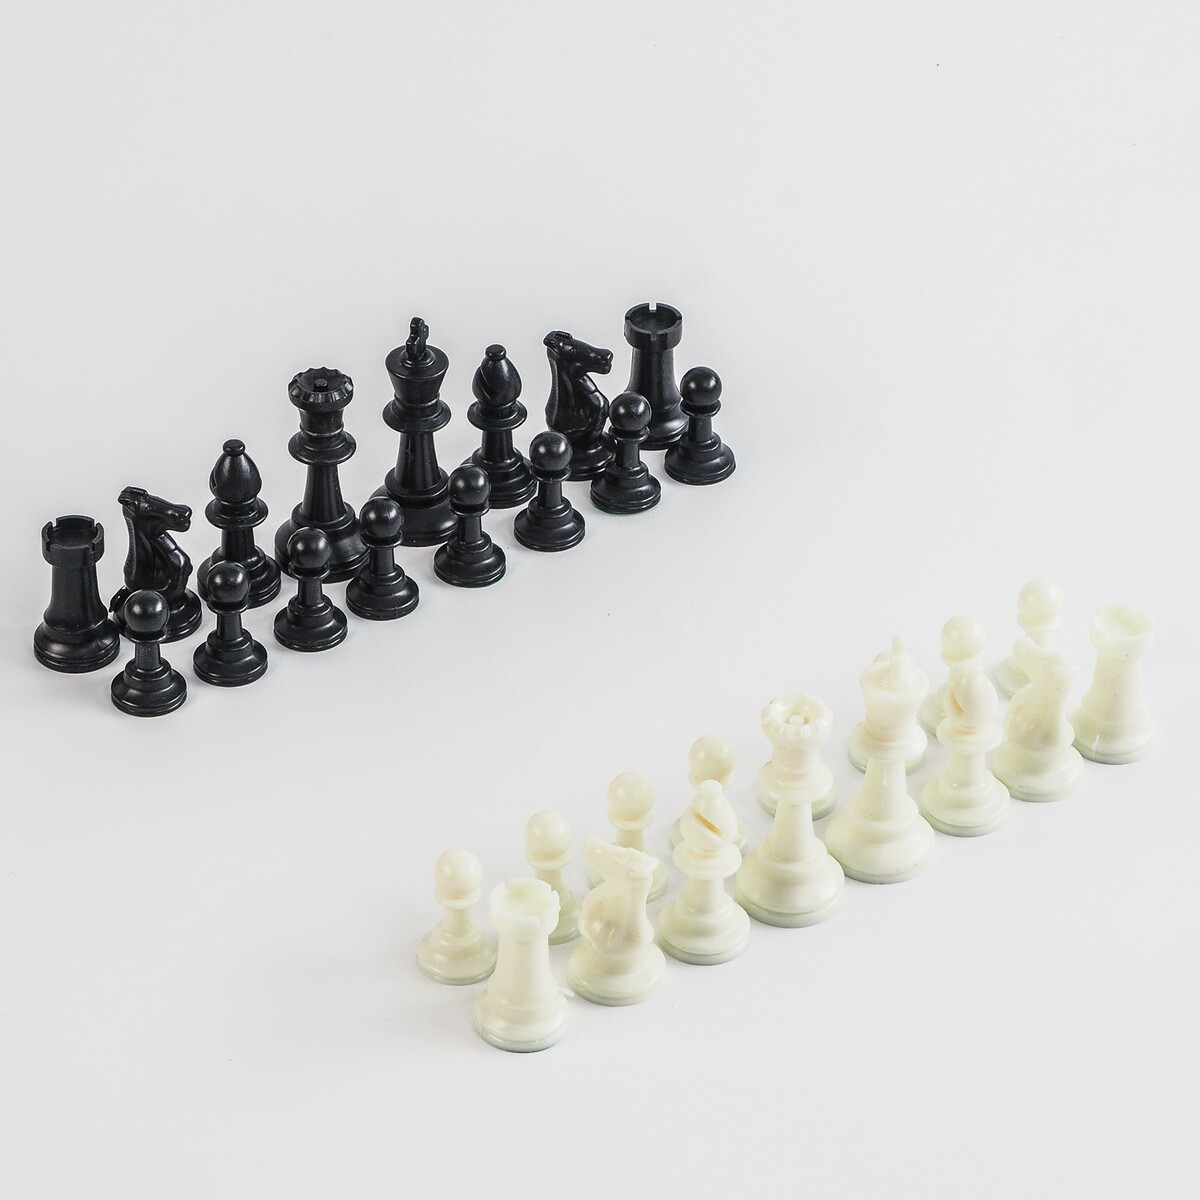 Шахматные фигуры, пластик, король h-7.5 см, пешка h-3.5 см шахматные фигуры